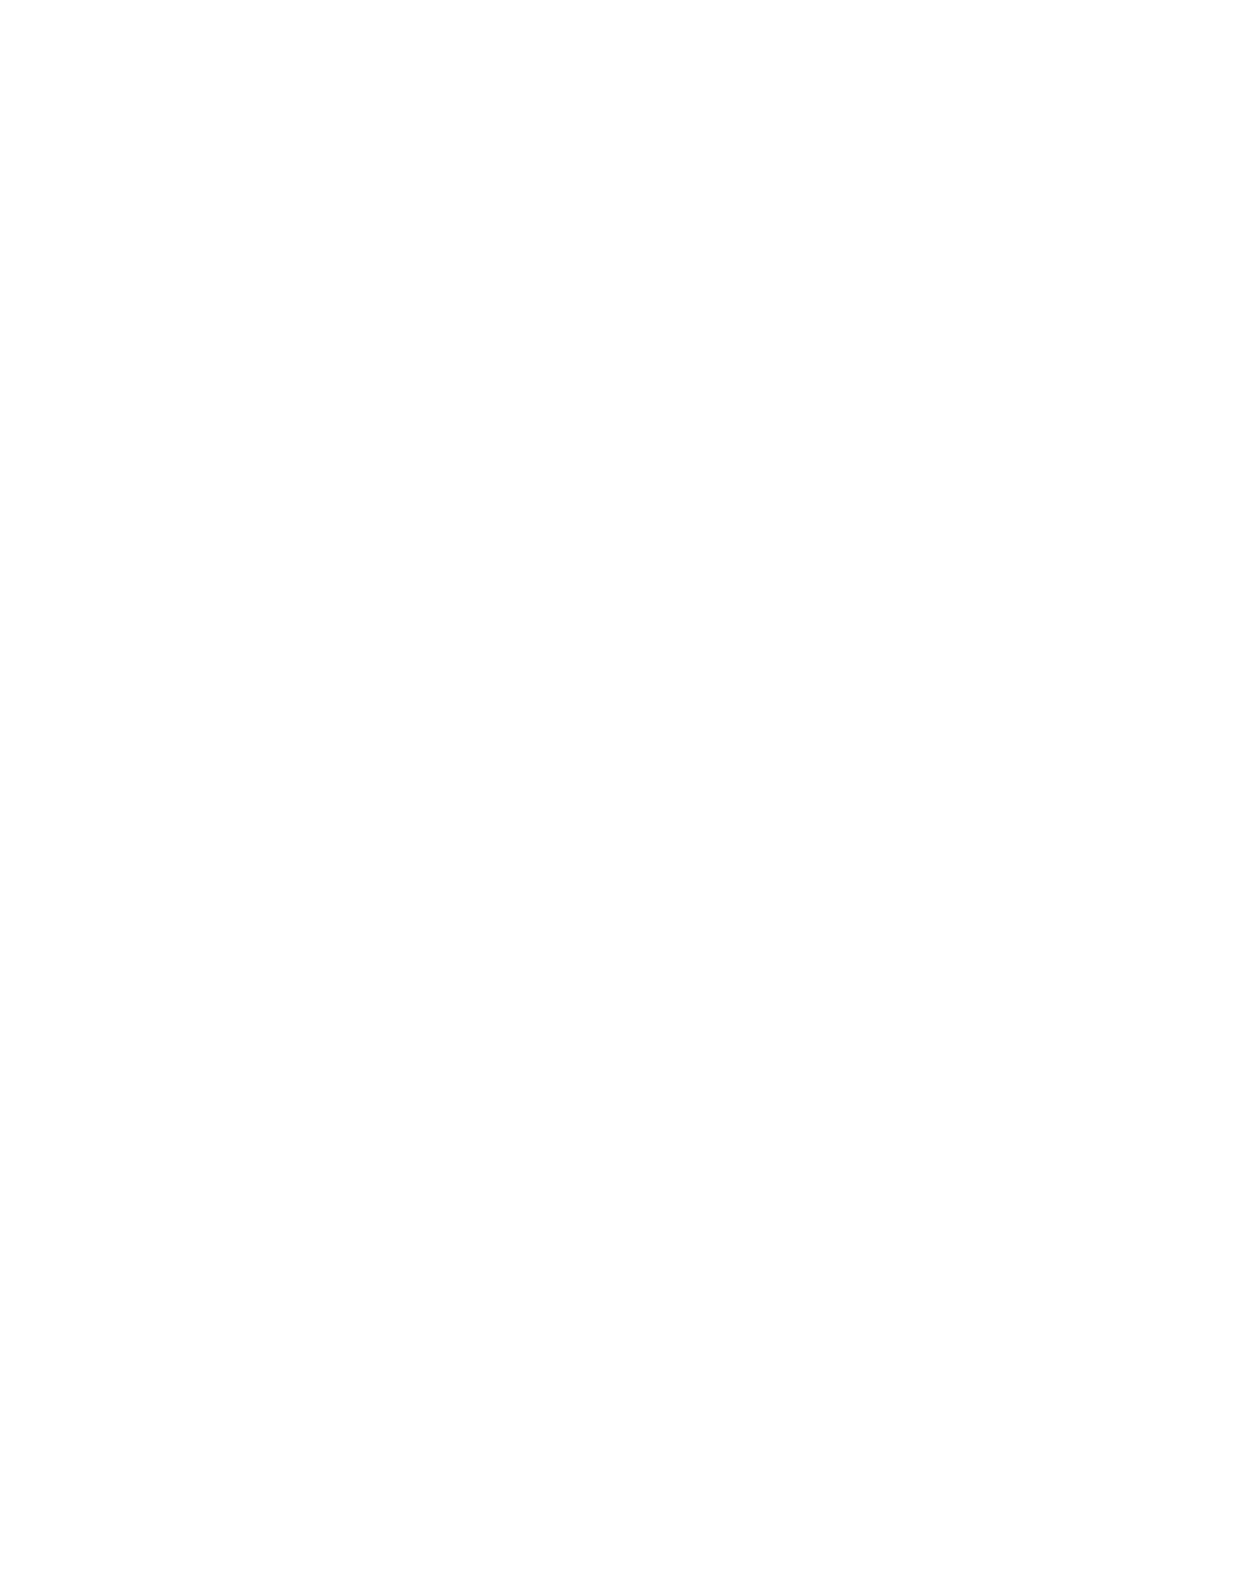 Richardson Electronics logo for dark backgrounds (transparent PNG)